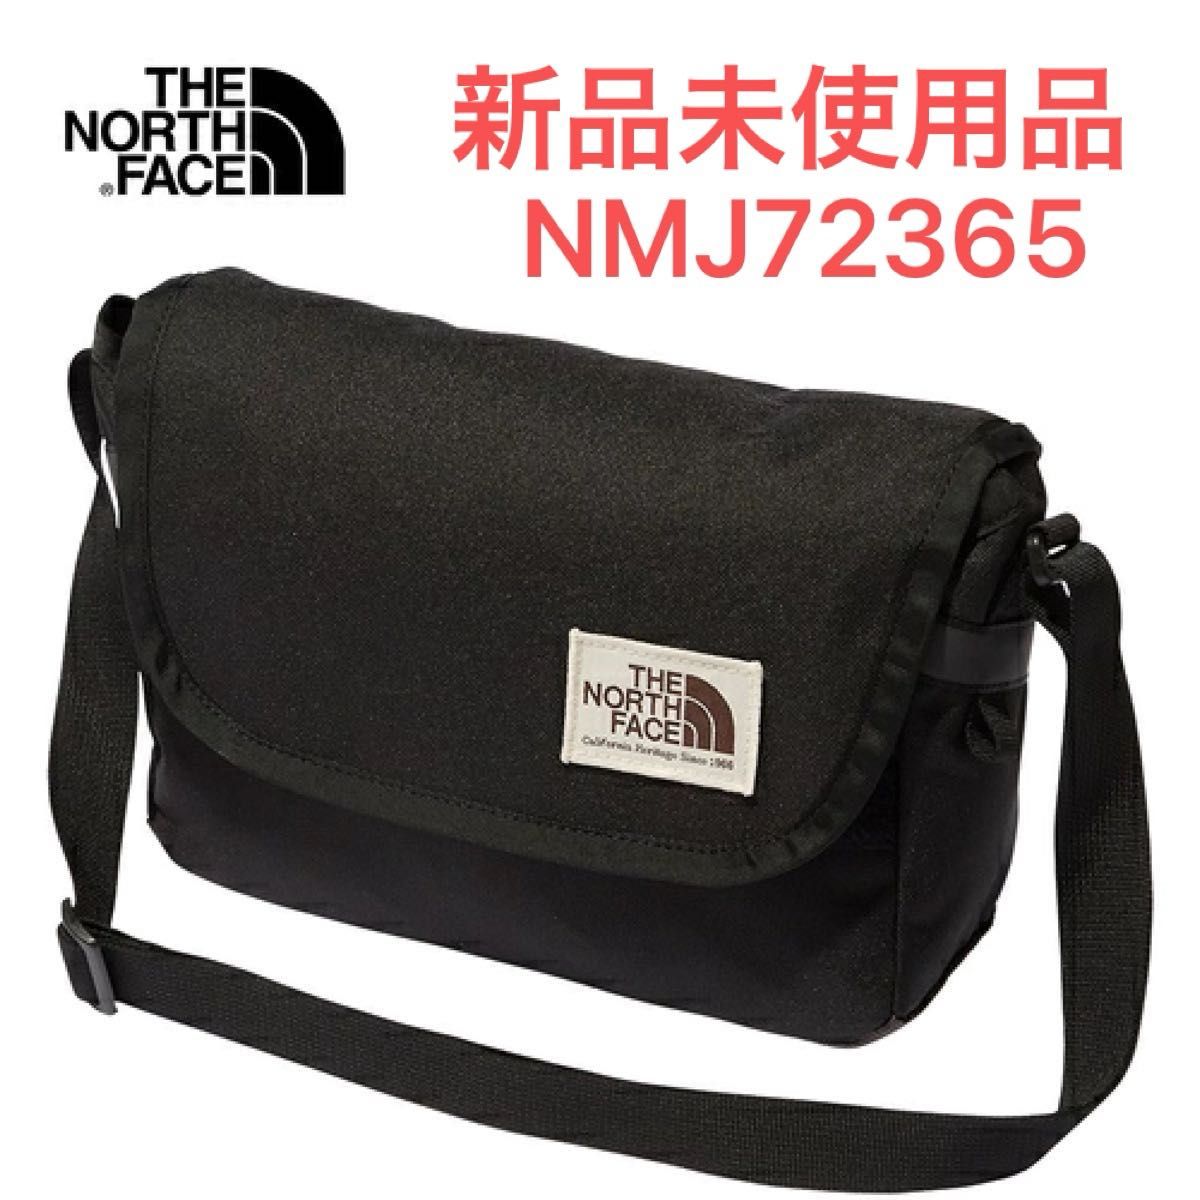 THE NORTH FACE ノースフェイス ショルダーポーチ(ブラック) NMJ72365